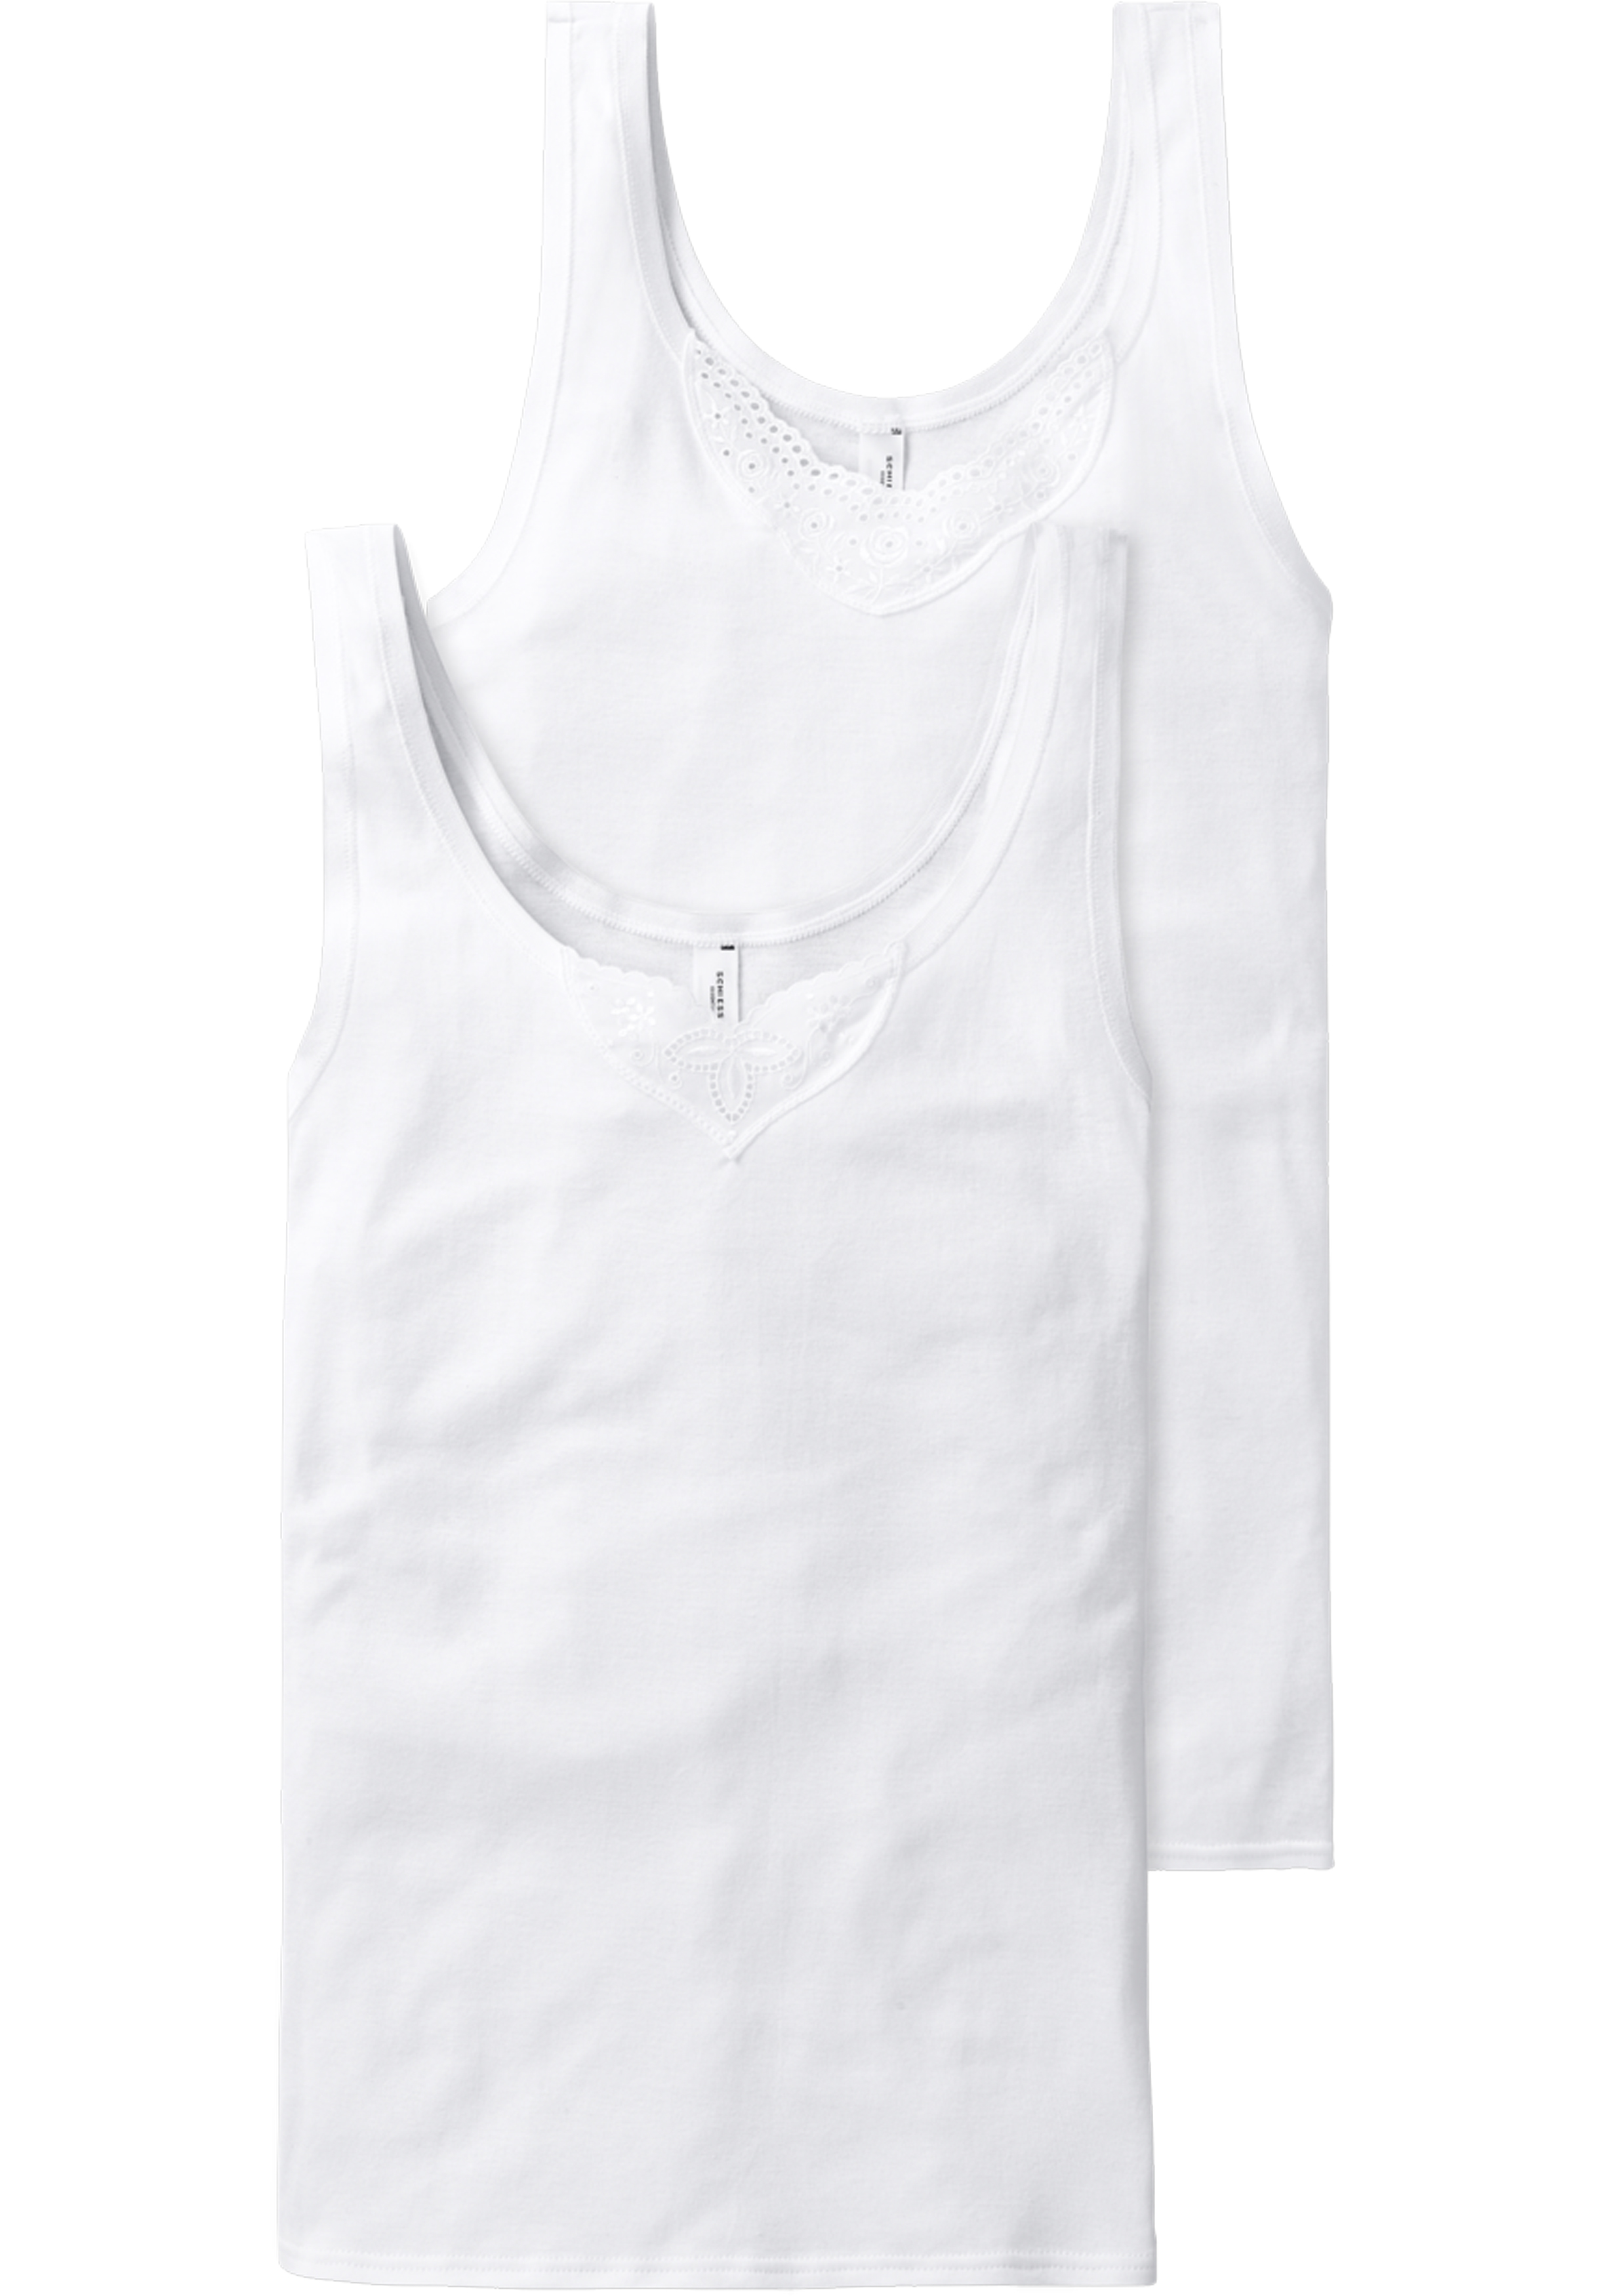 SCHIESSER Cotton Essentials singlet (2-pack), dames onderhemd wit